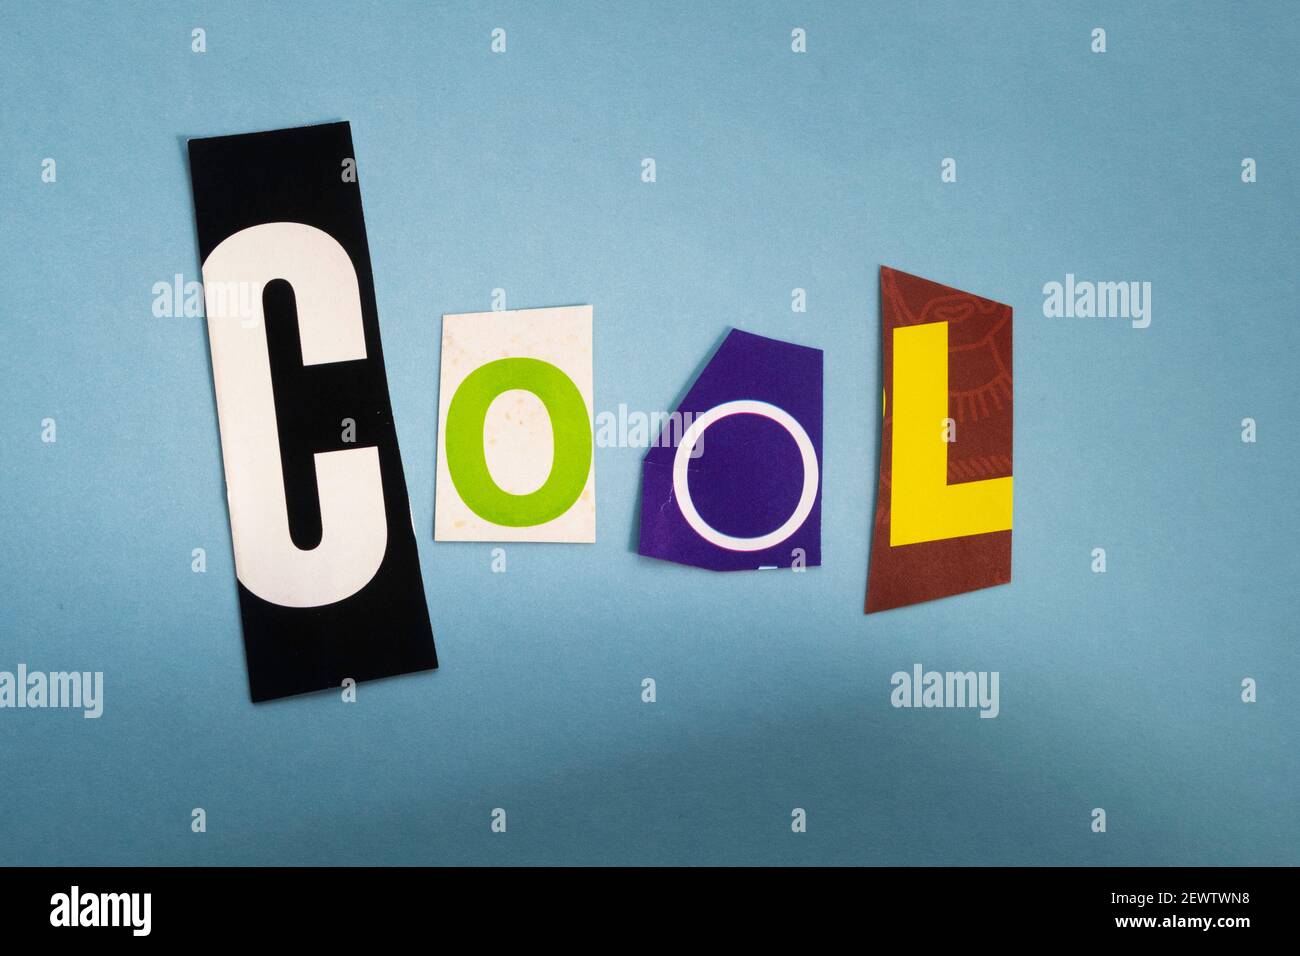 Das Wort "COOL" mit ausgeschnittenen Papierbuchstaben in der Lösegeld Note Effekt Typografie, USA Stockfoto